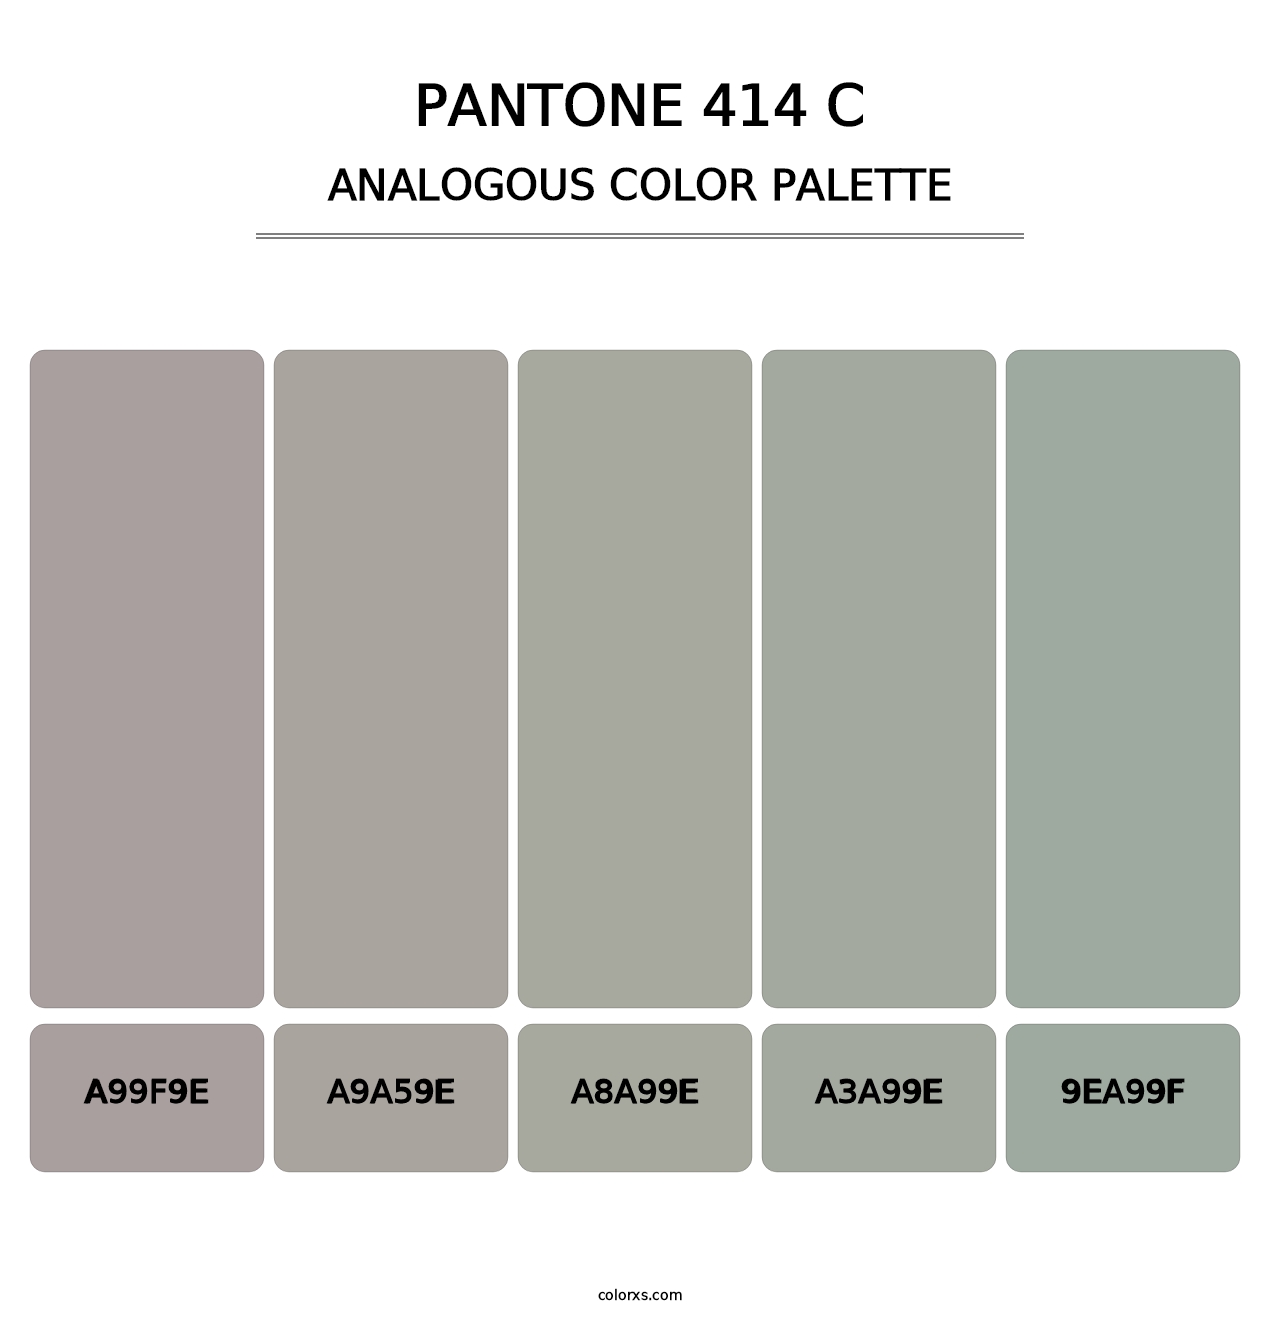 PANTONE 414 C - Analogous Color Palette